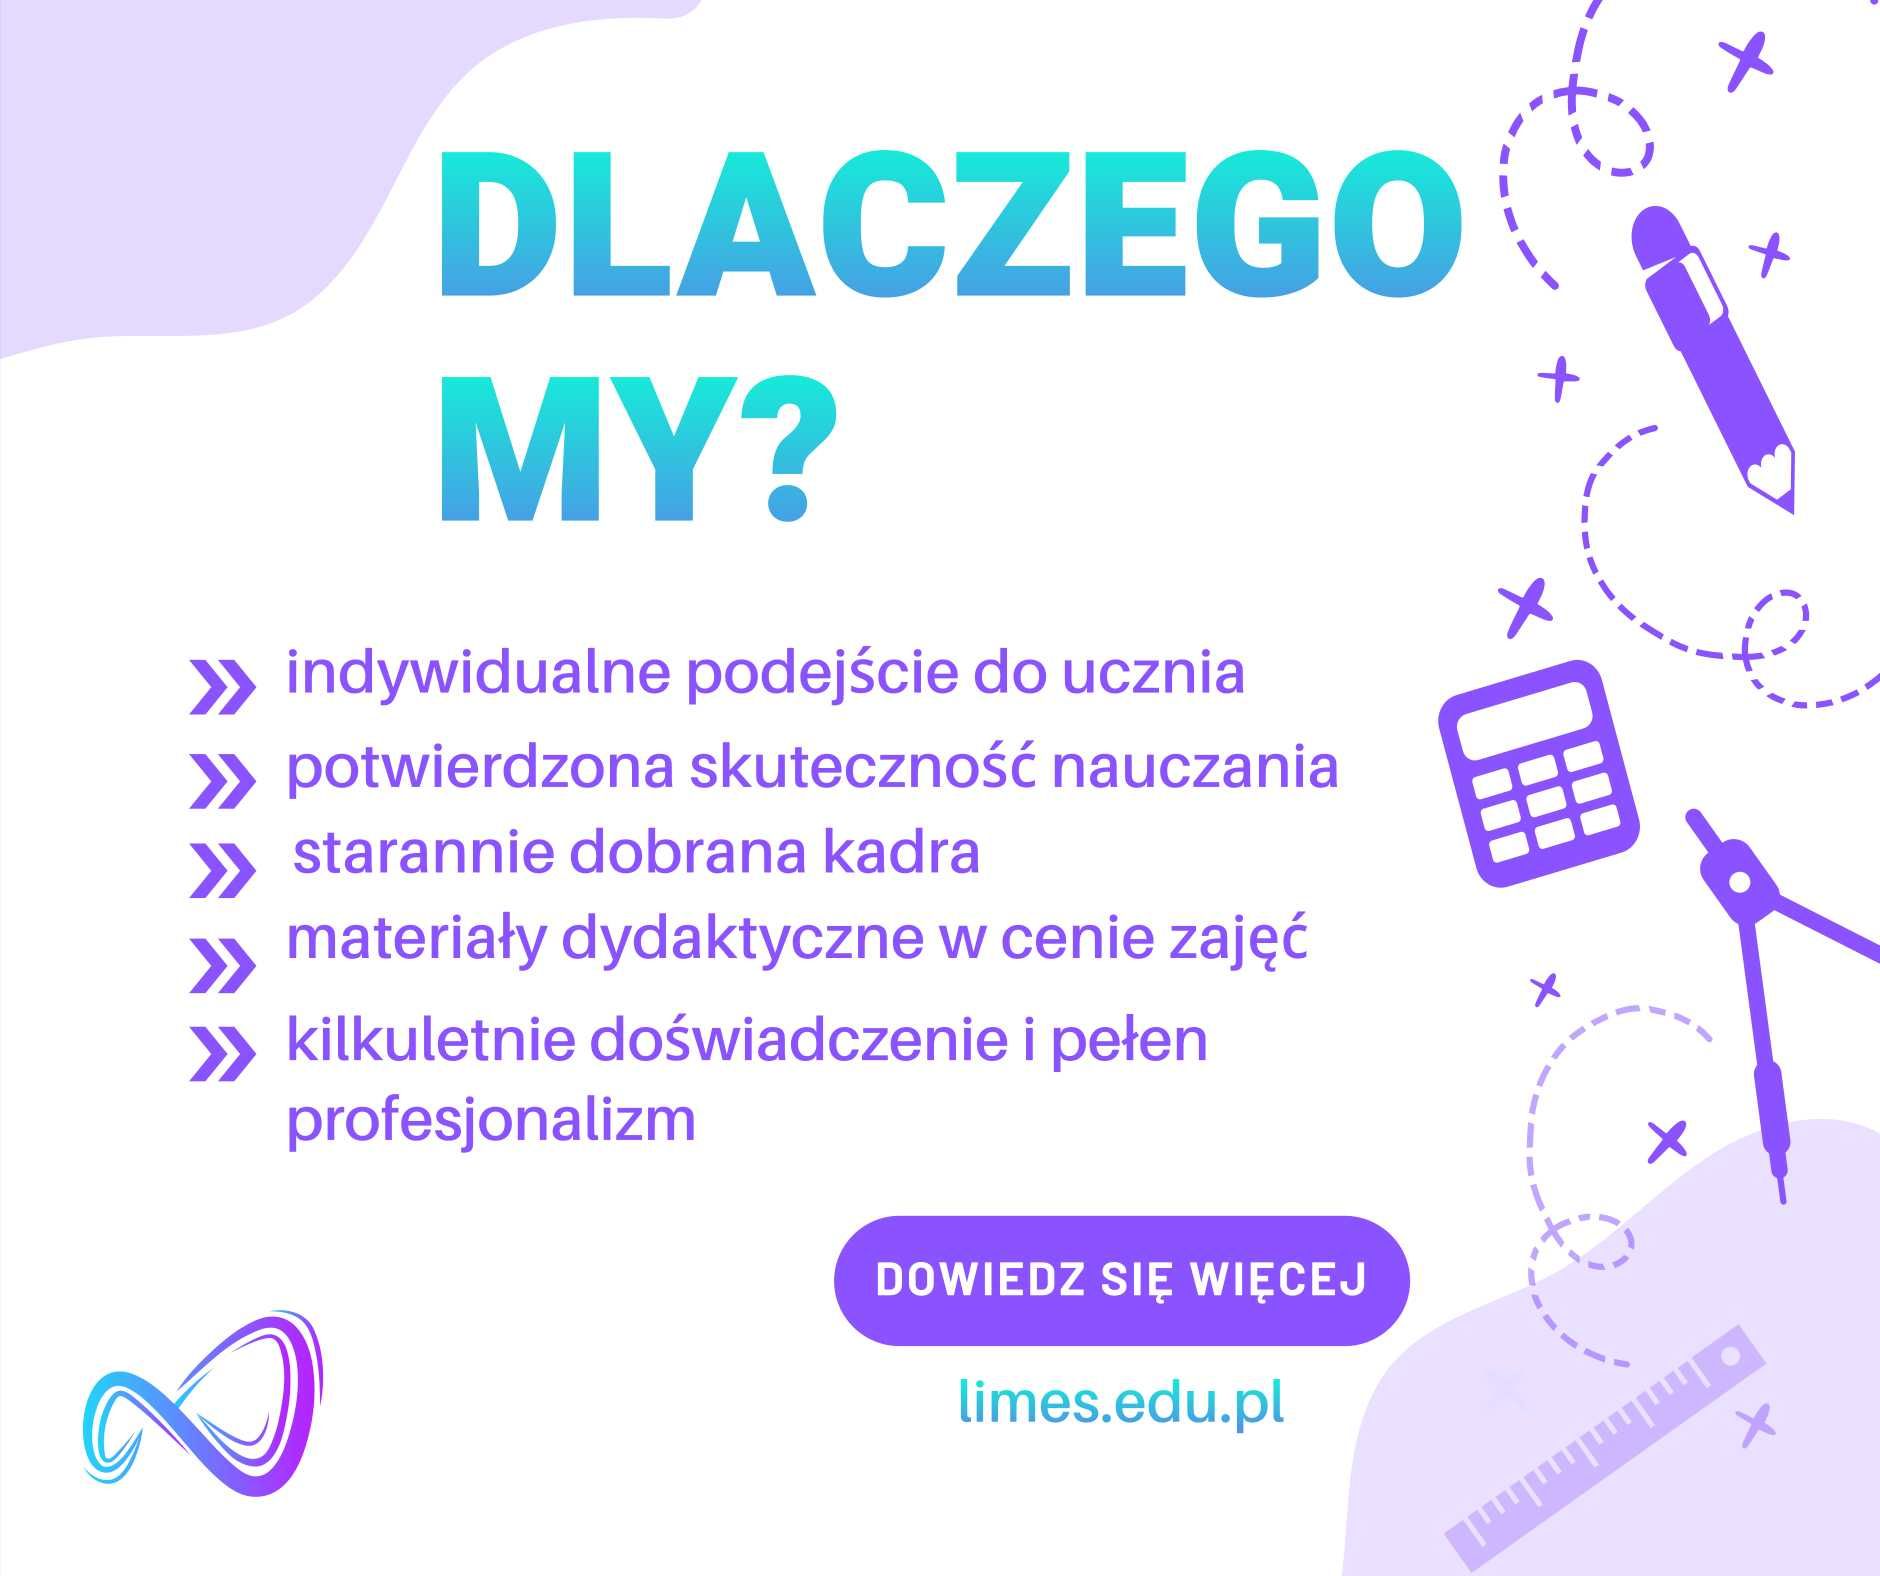 Korepetycje z matematyki, fizyki i j. angielskiego - limes.edu.pl